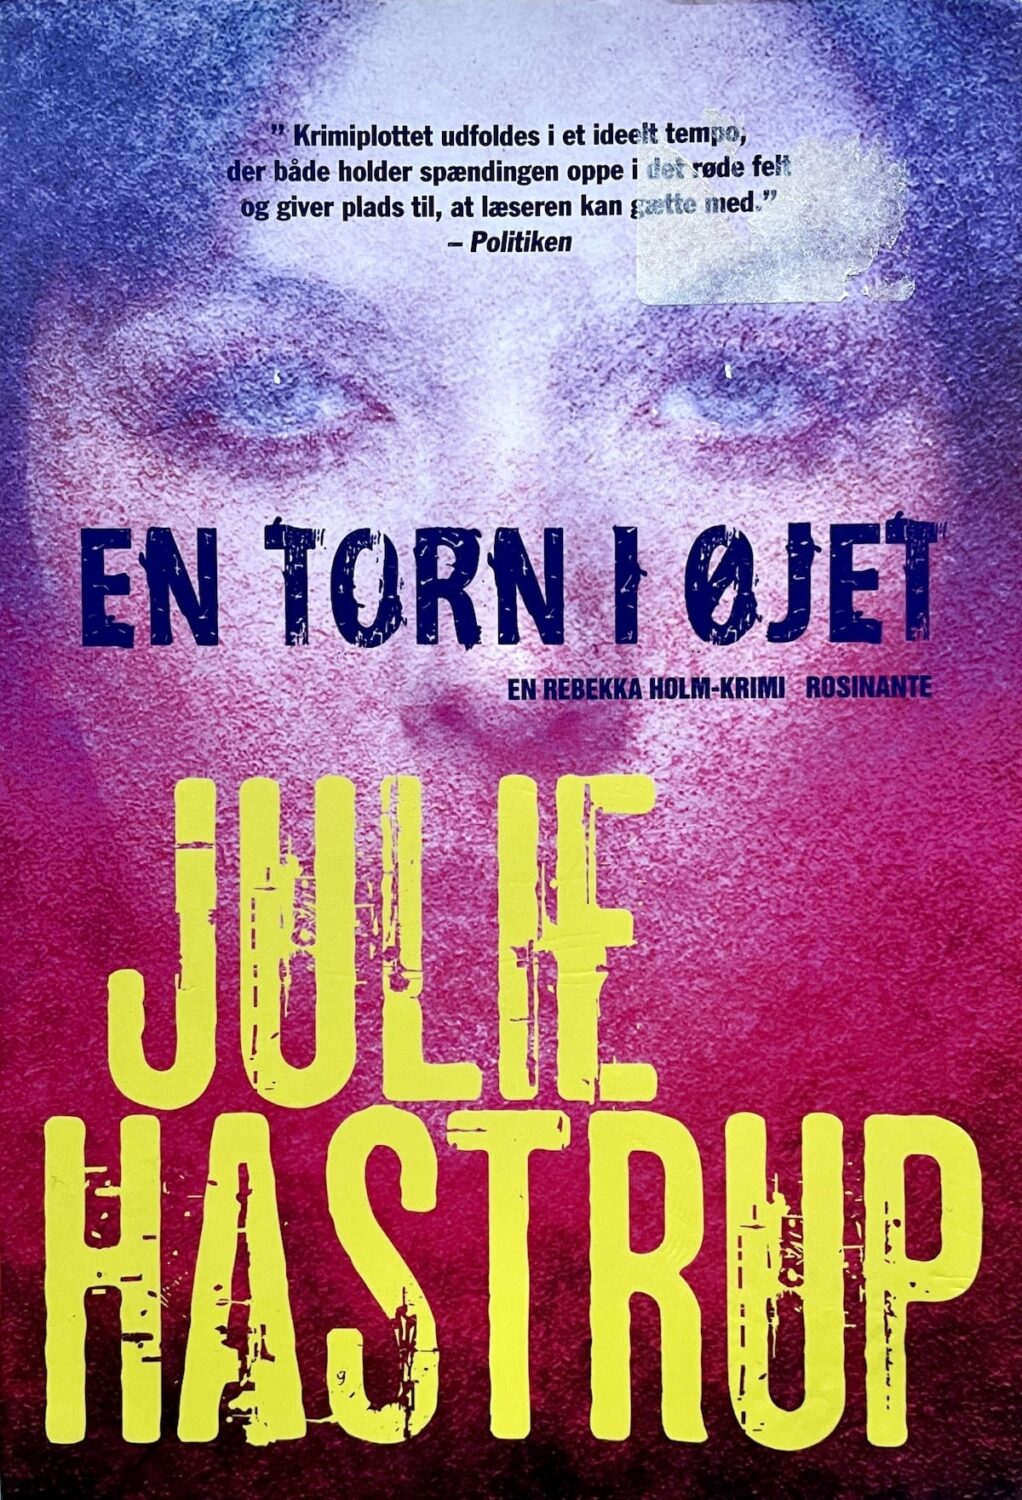 En torn i øjet, Julie Hastrup, brugt bog